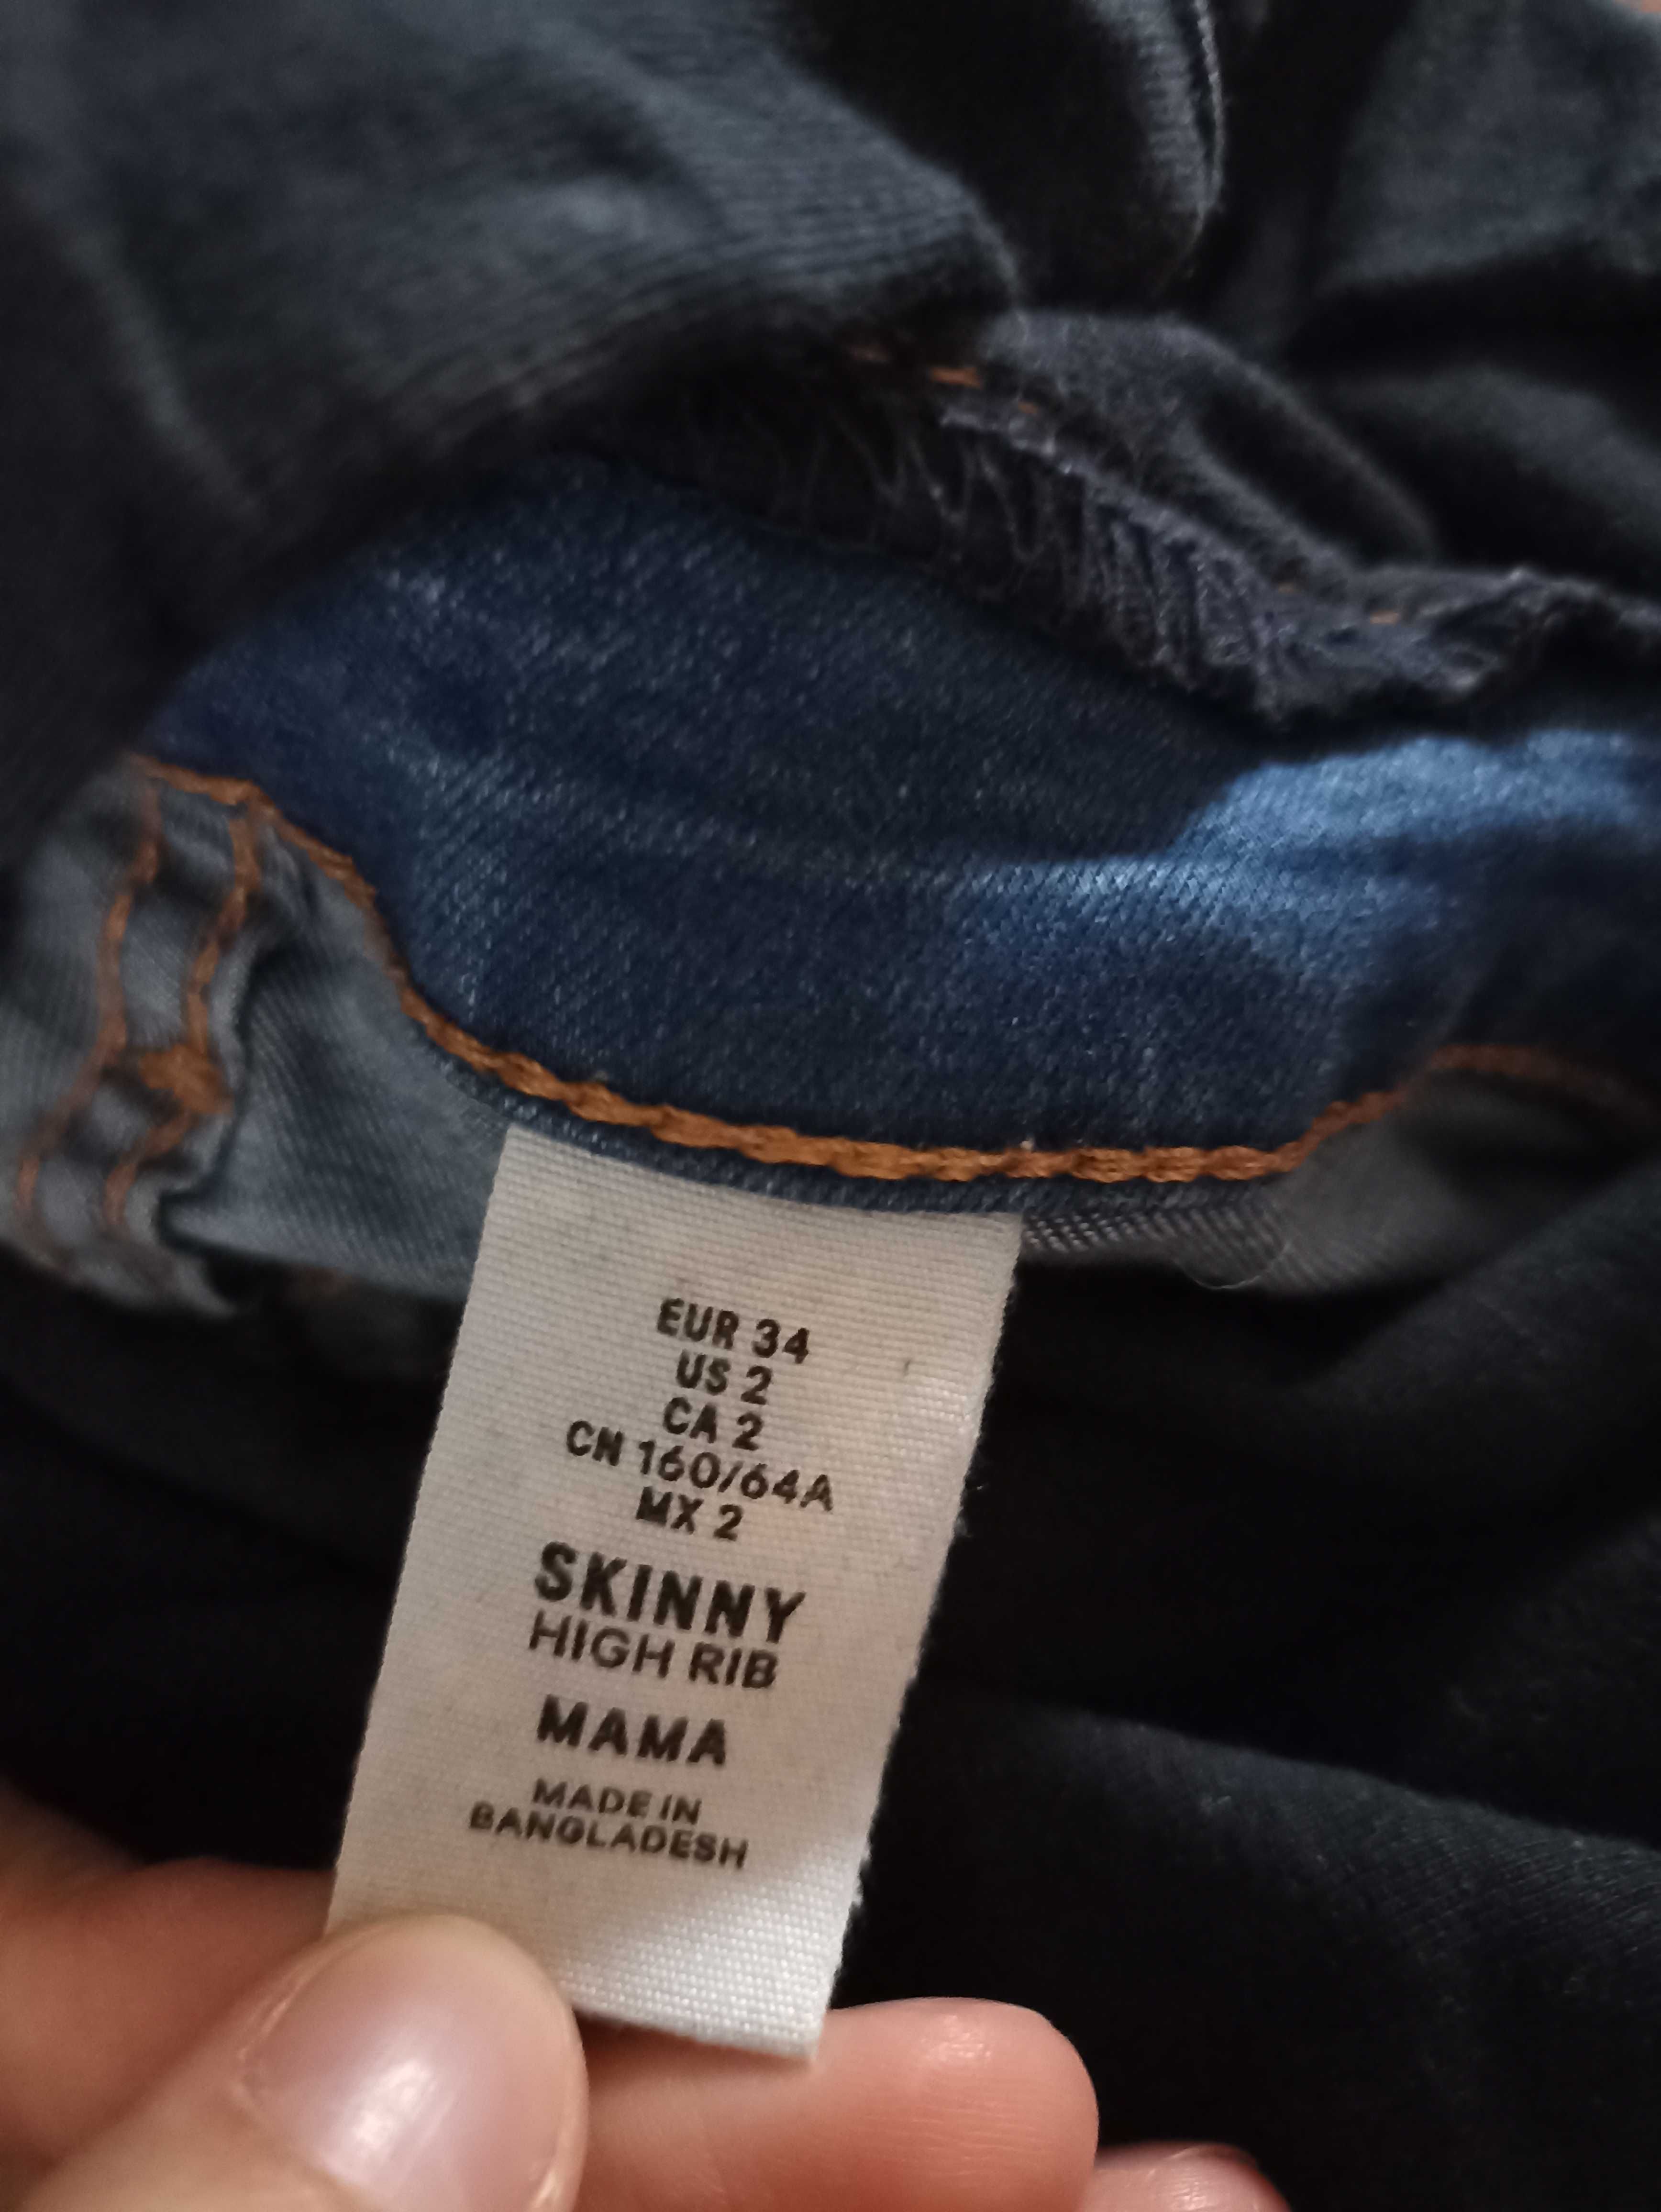 Spodnie jeansy ciążowe H&M r. 34